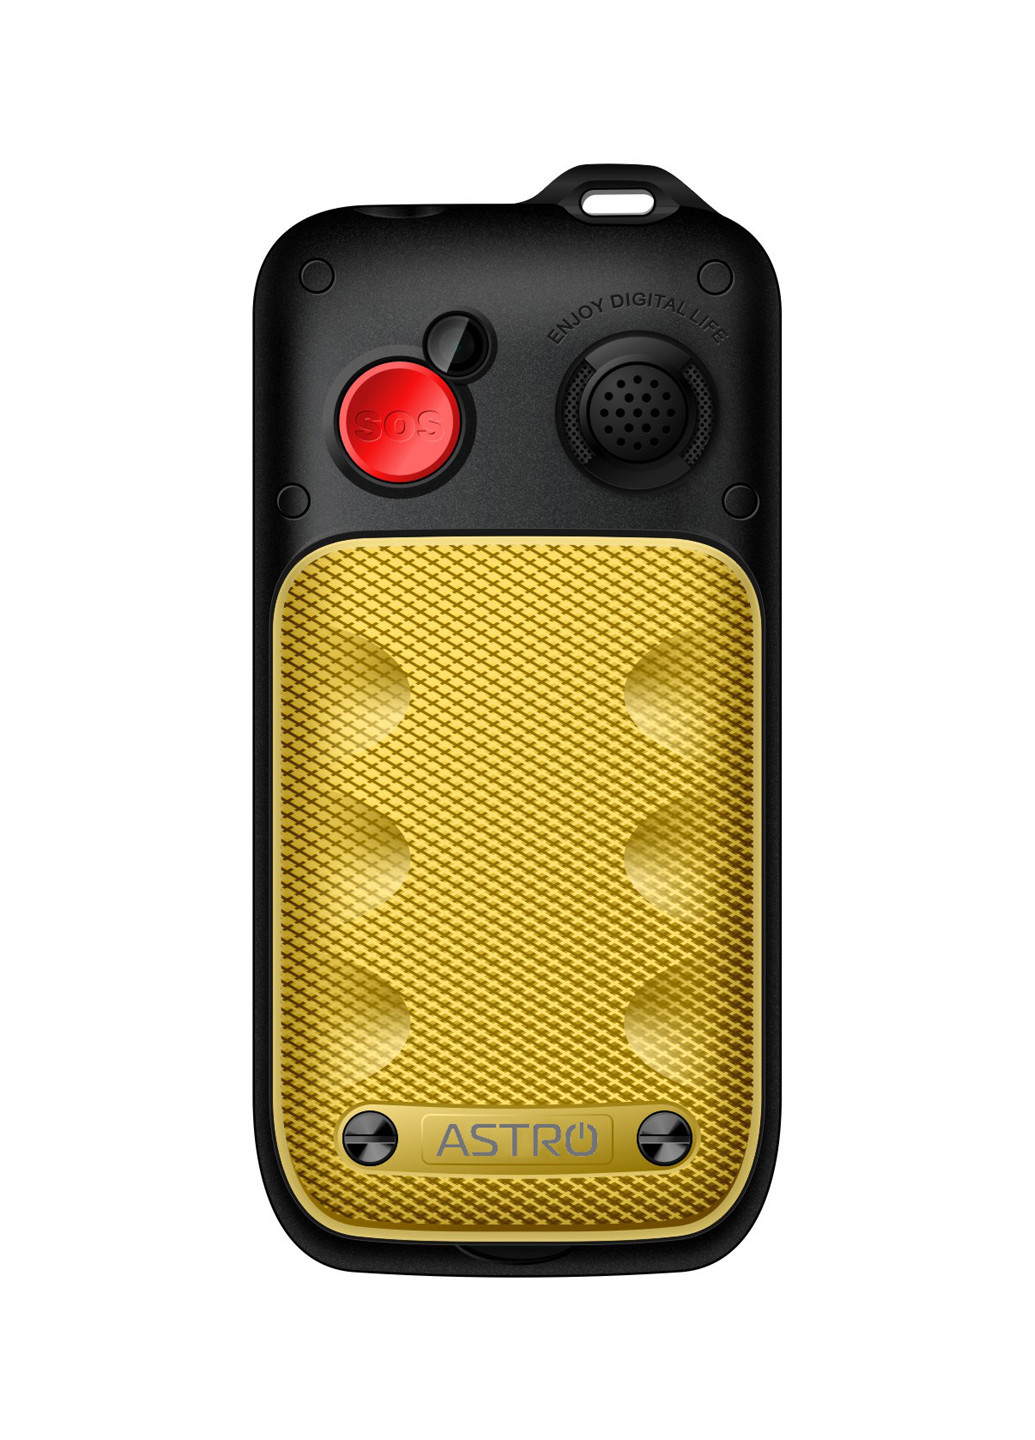 Мобільний телефон B200 RX Yellow Astro astro b200 rx yellow (131851169)